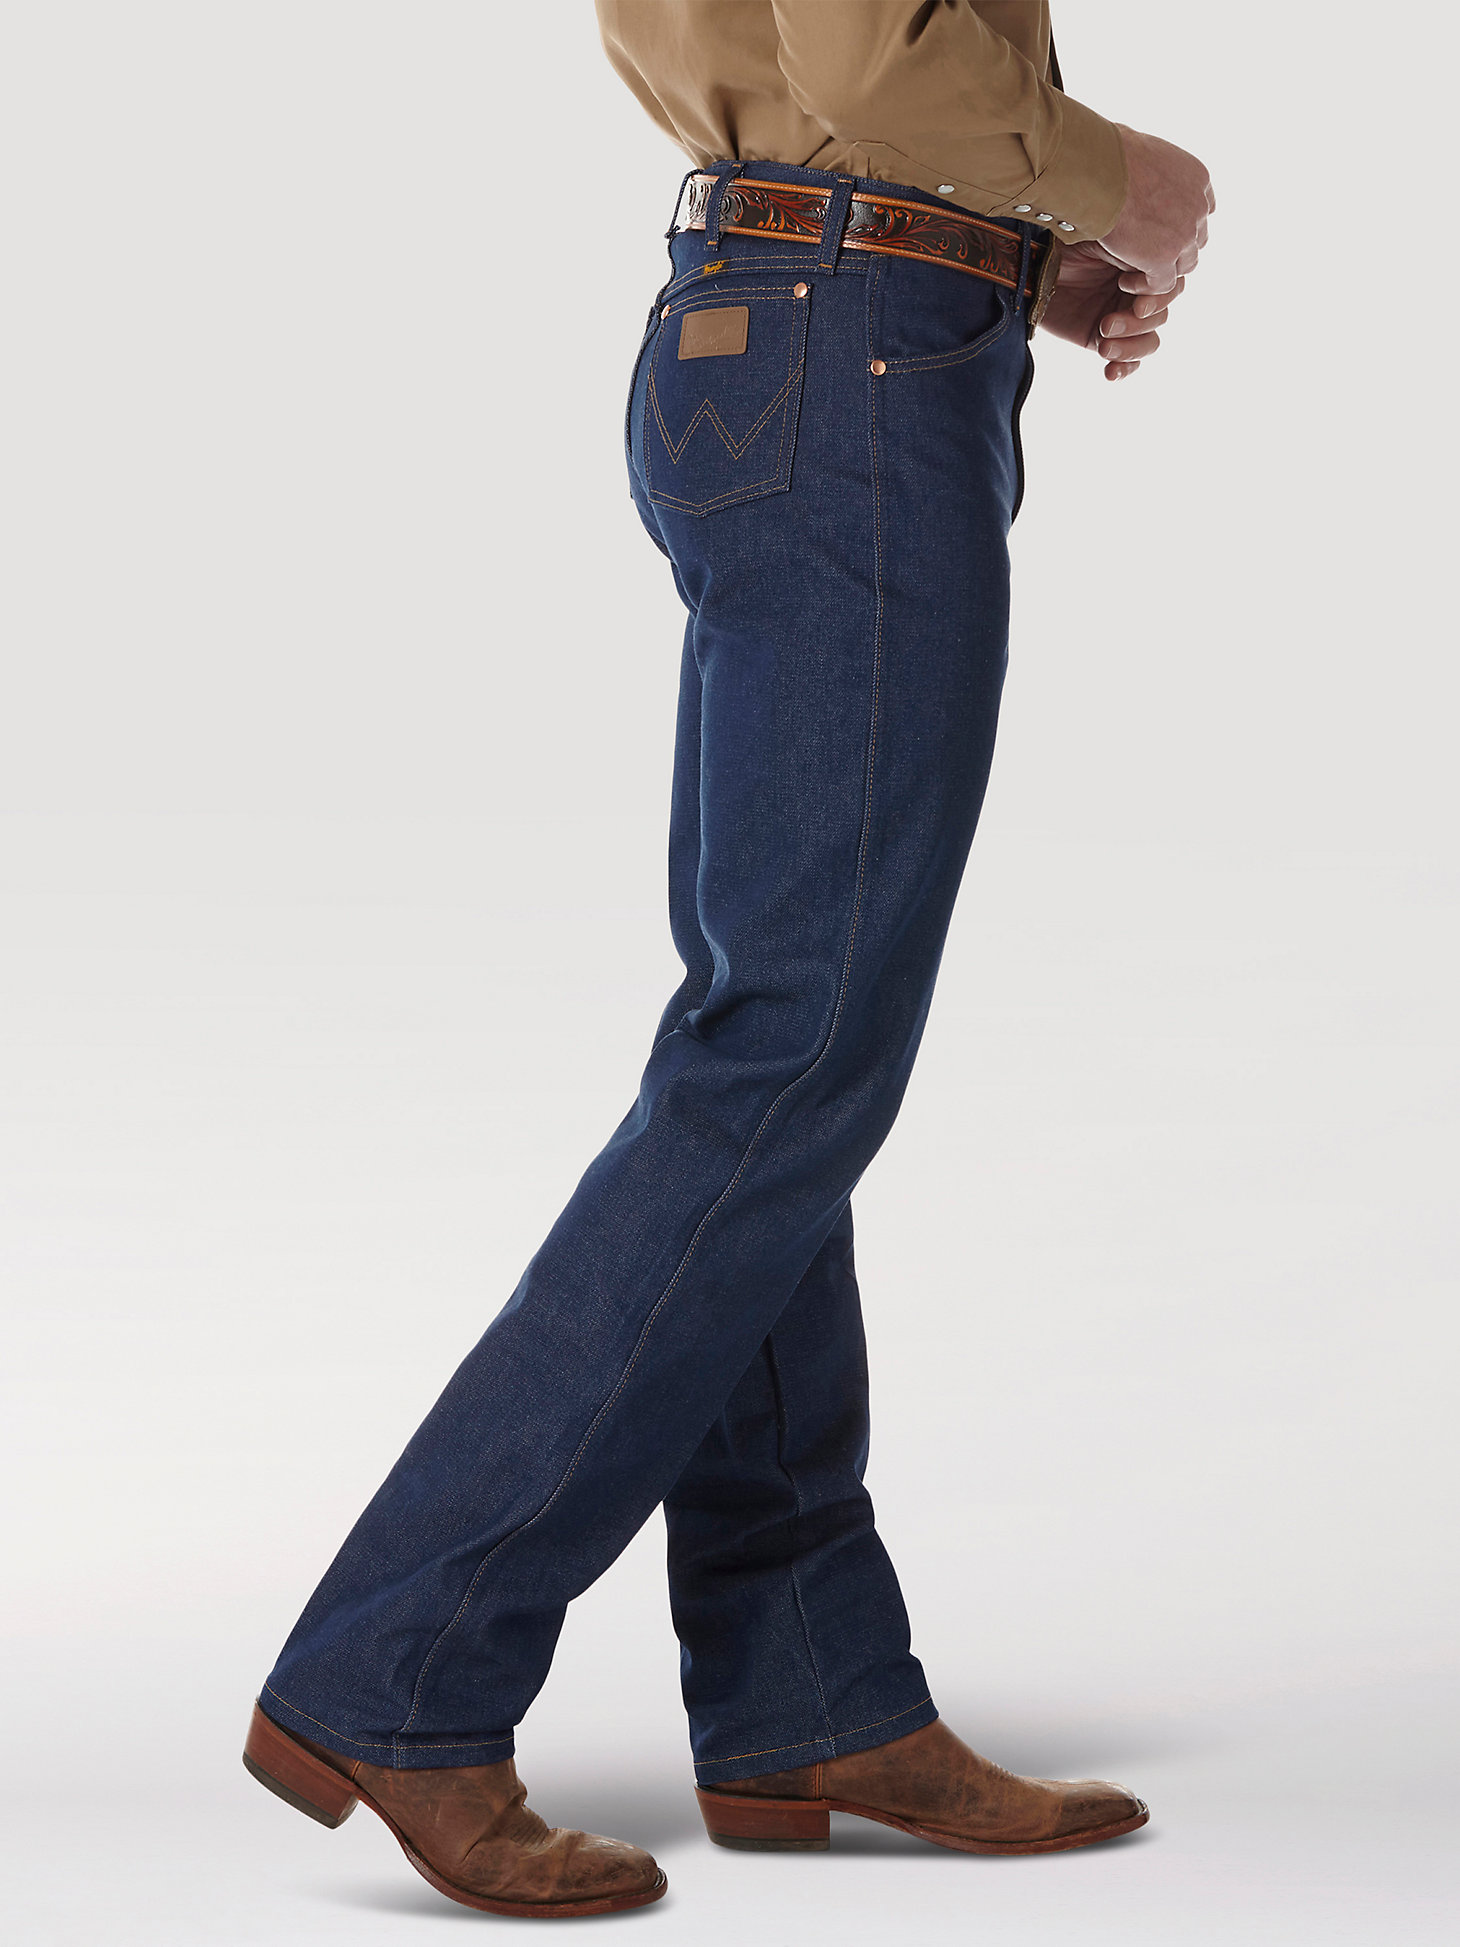 Rigid Wrangler® Cowboy Cut® Original Fit Jean in Rigid Indigo